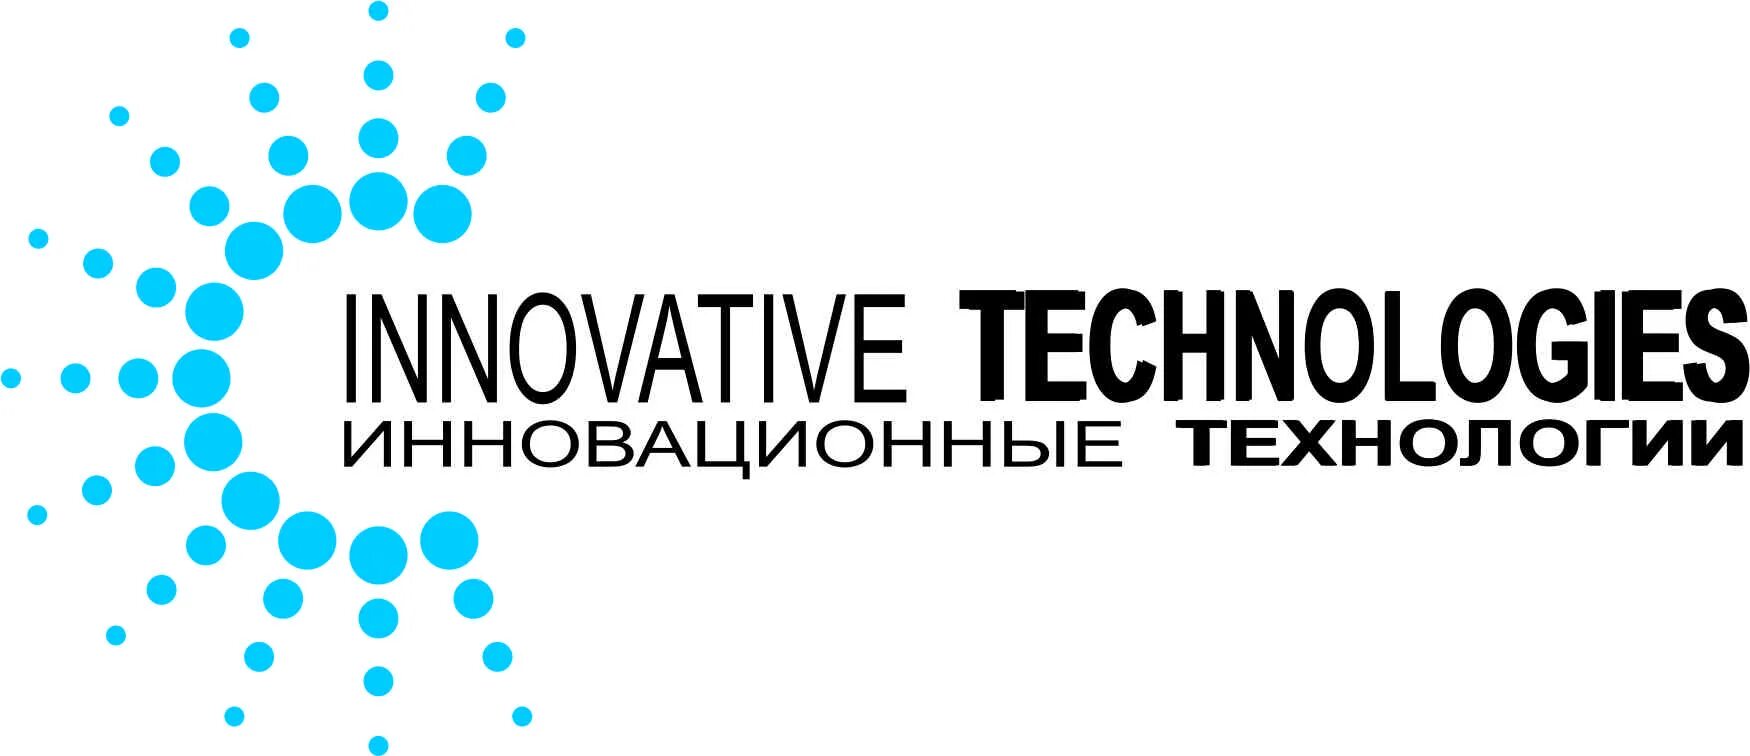 Лого технологии. Инновационные технологии logo. Инновационные технологии эмблема. Инновации и технология лого. Новые технологии логотип.